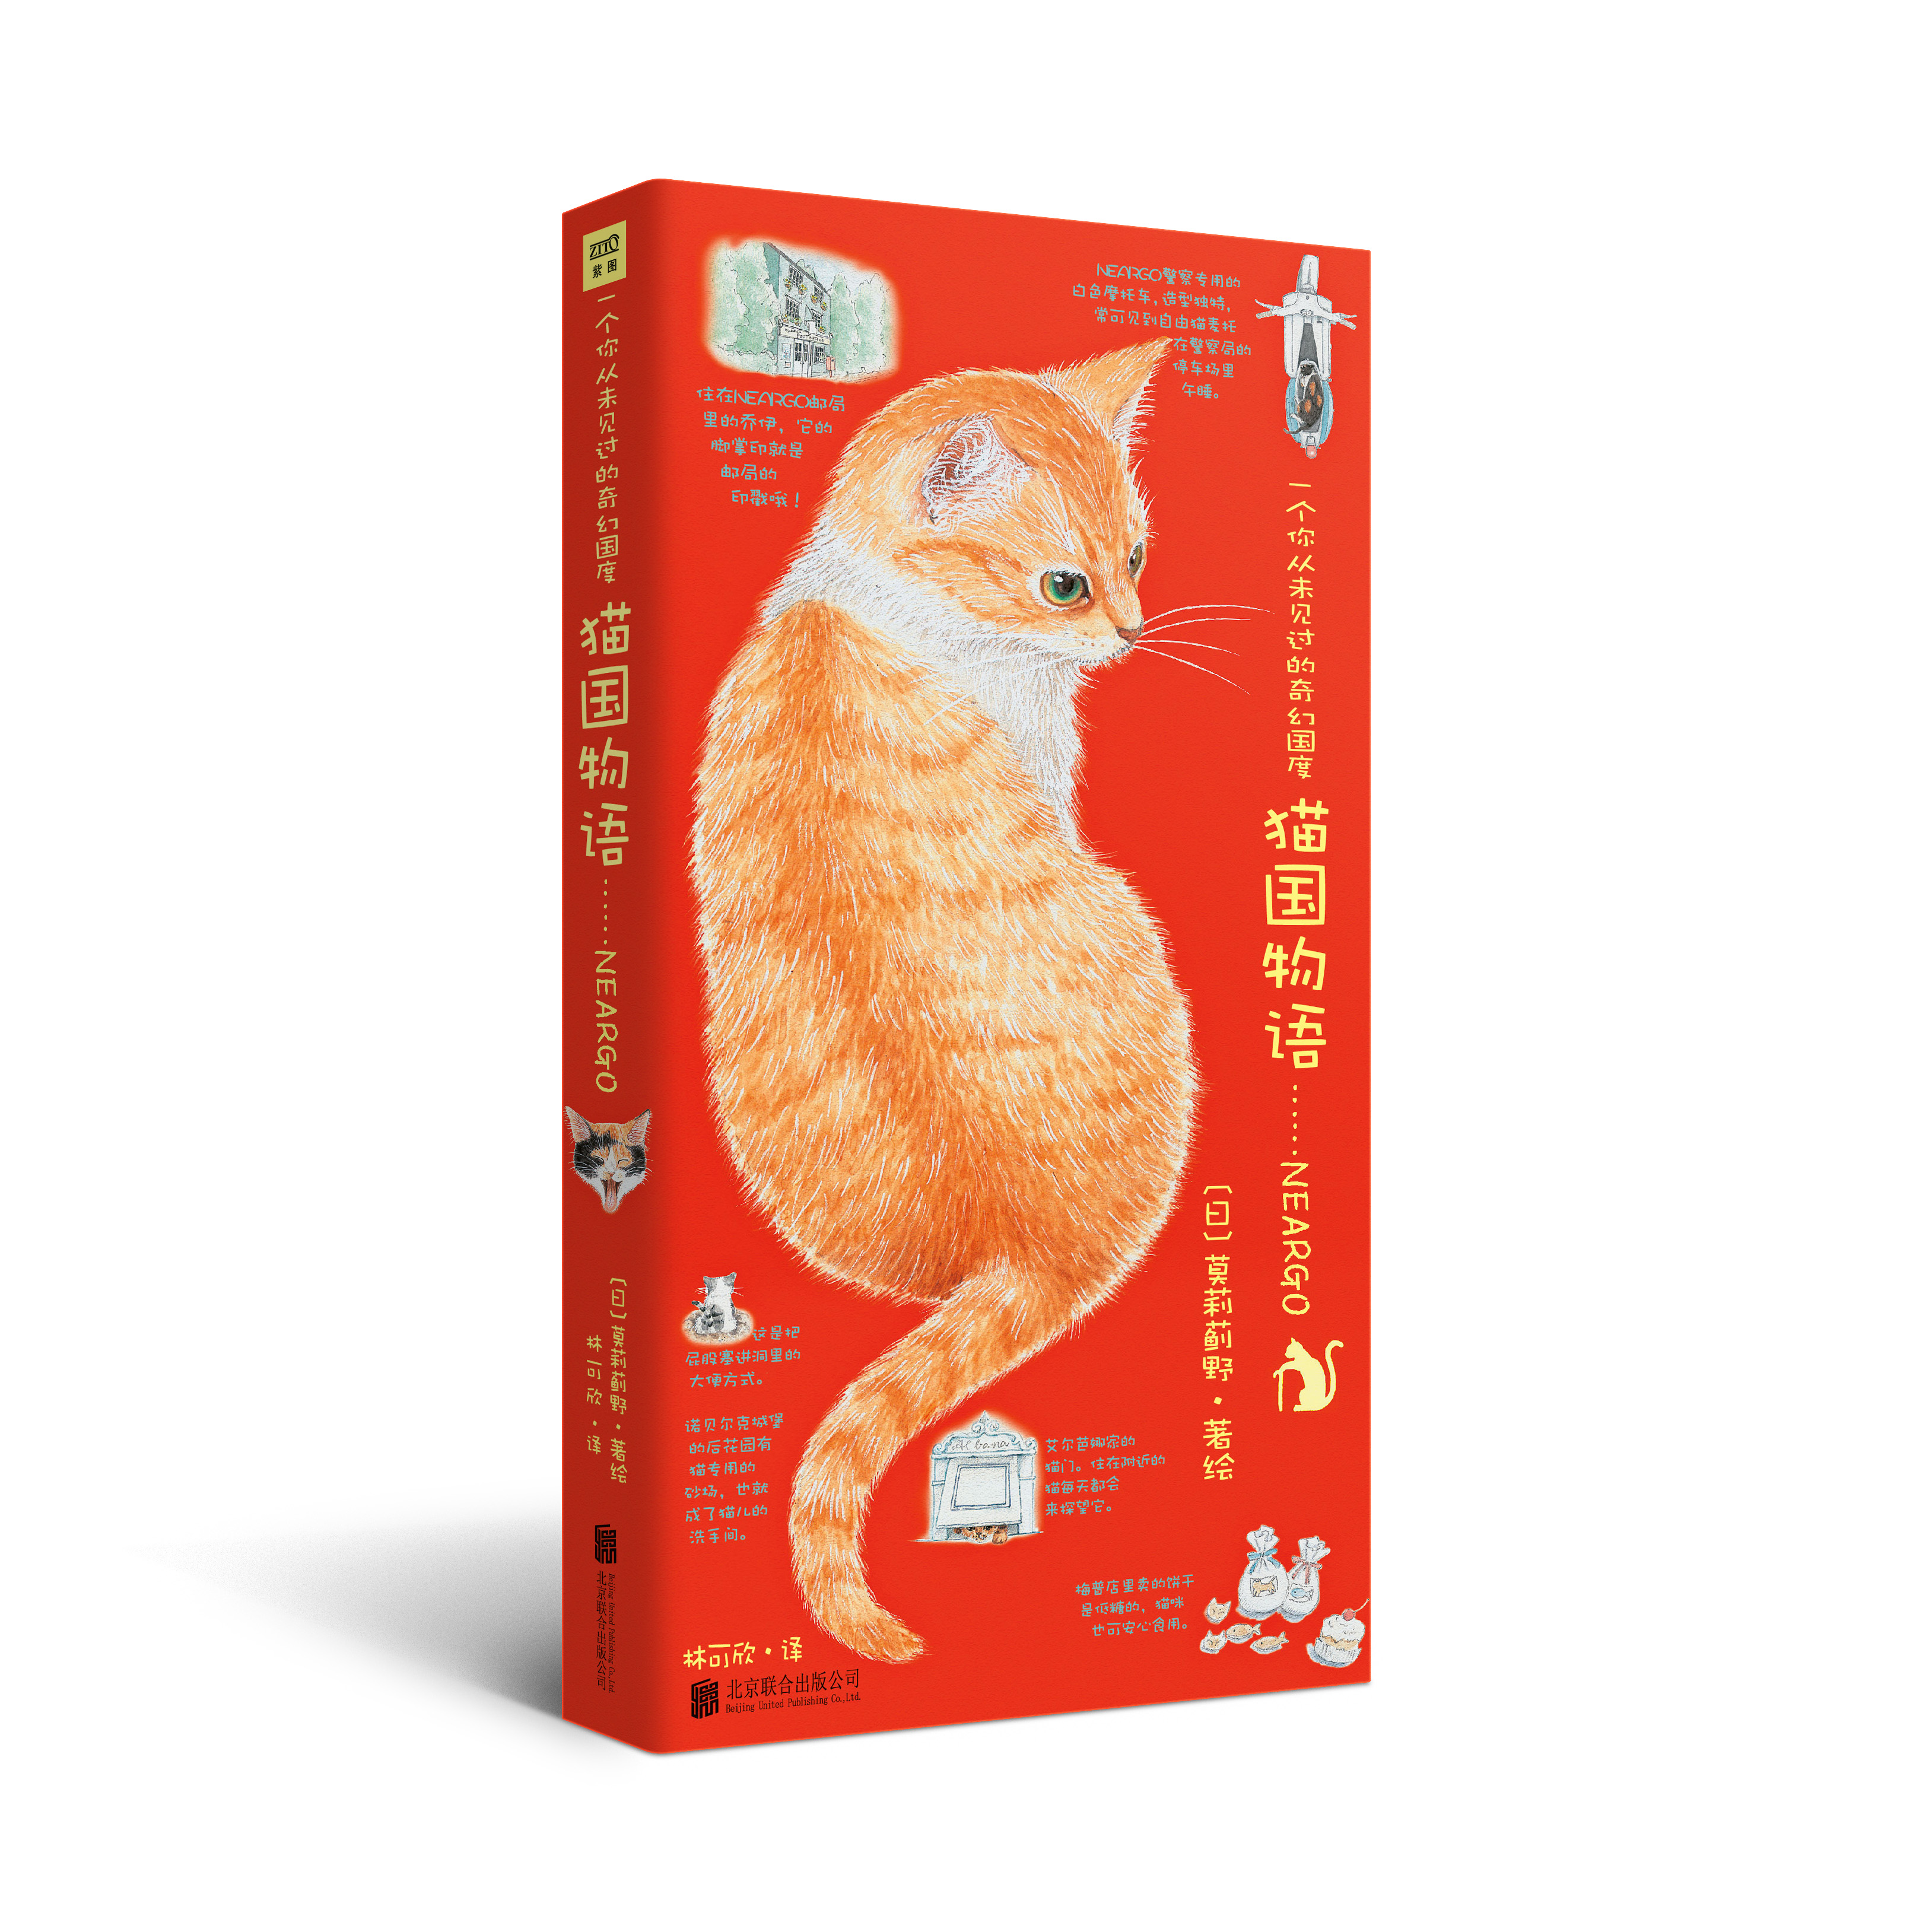 貓國物語(2019年北京聯合出版公司出版的圖書。)